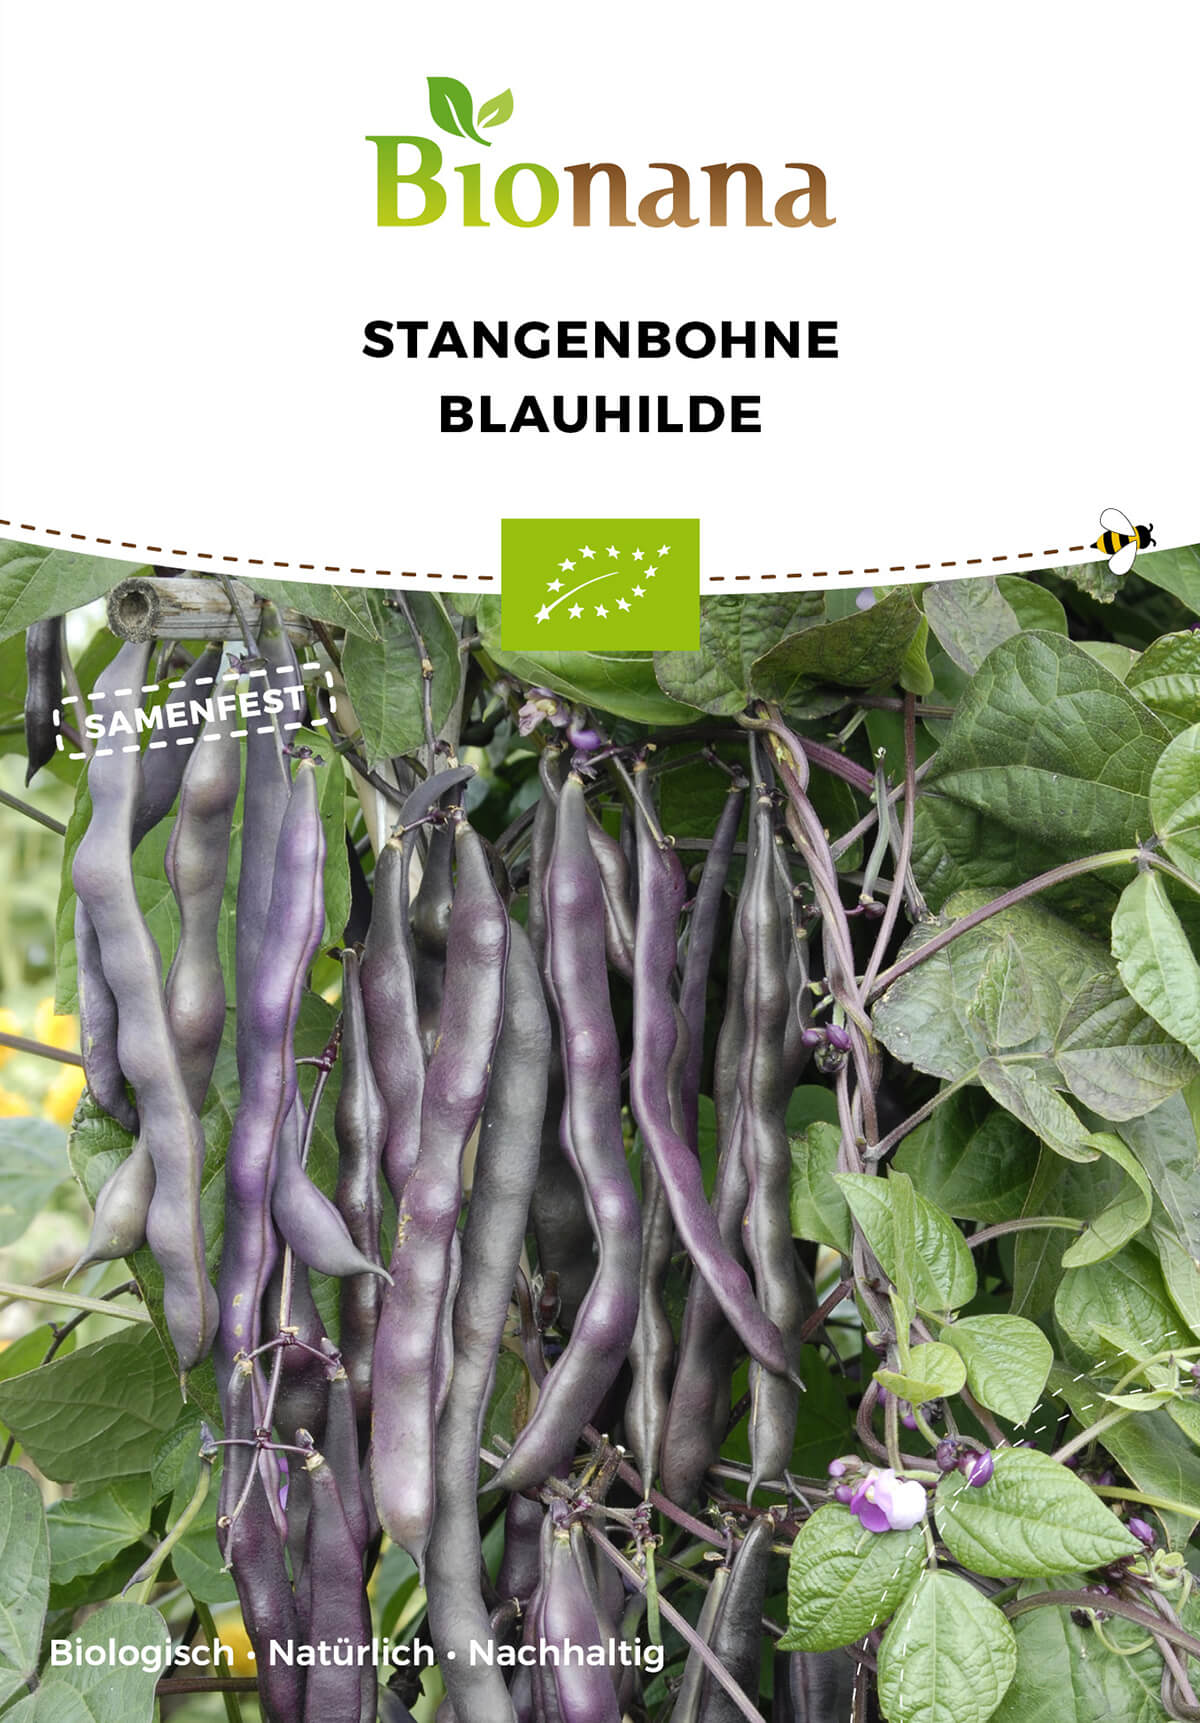 Stangenbohne Blauhilde | BIO Stangenbohnensamen von Bionana